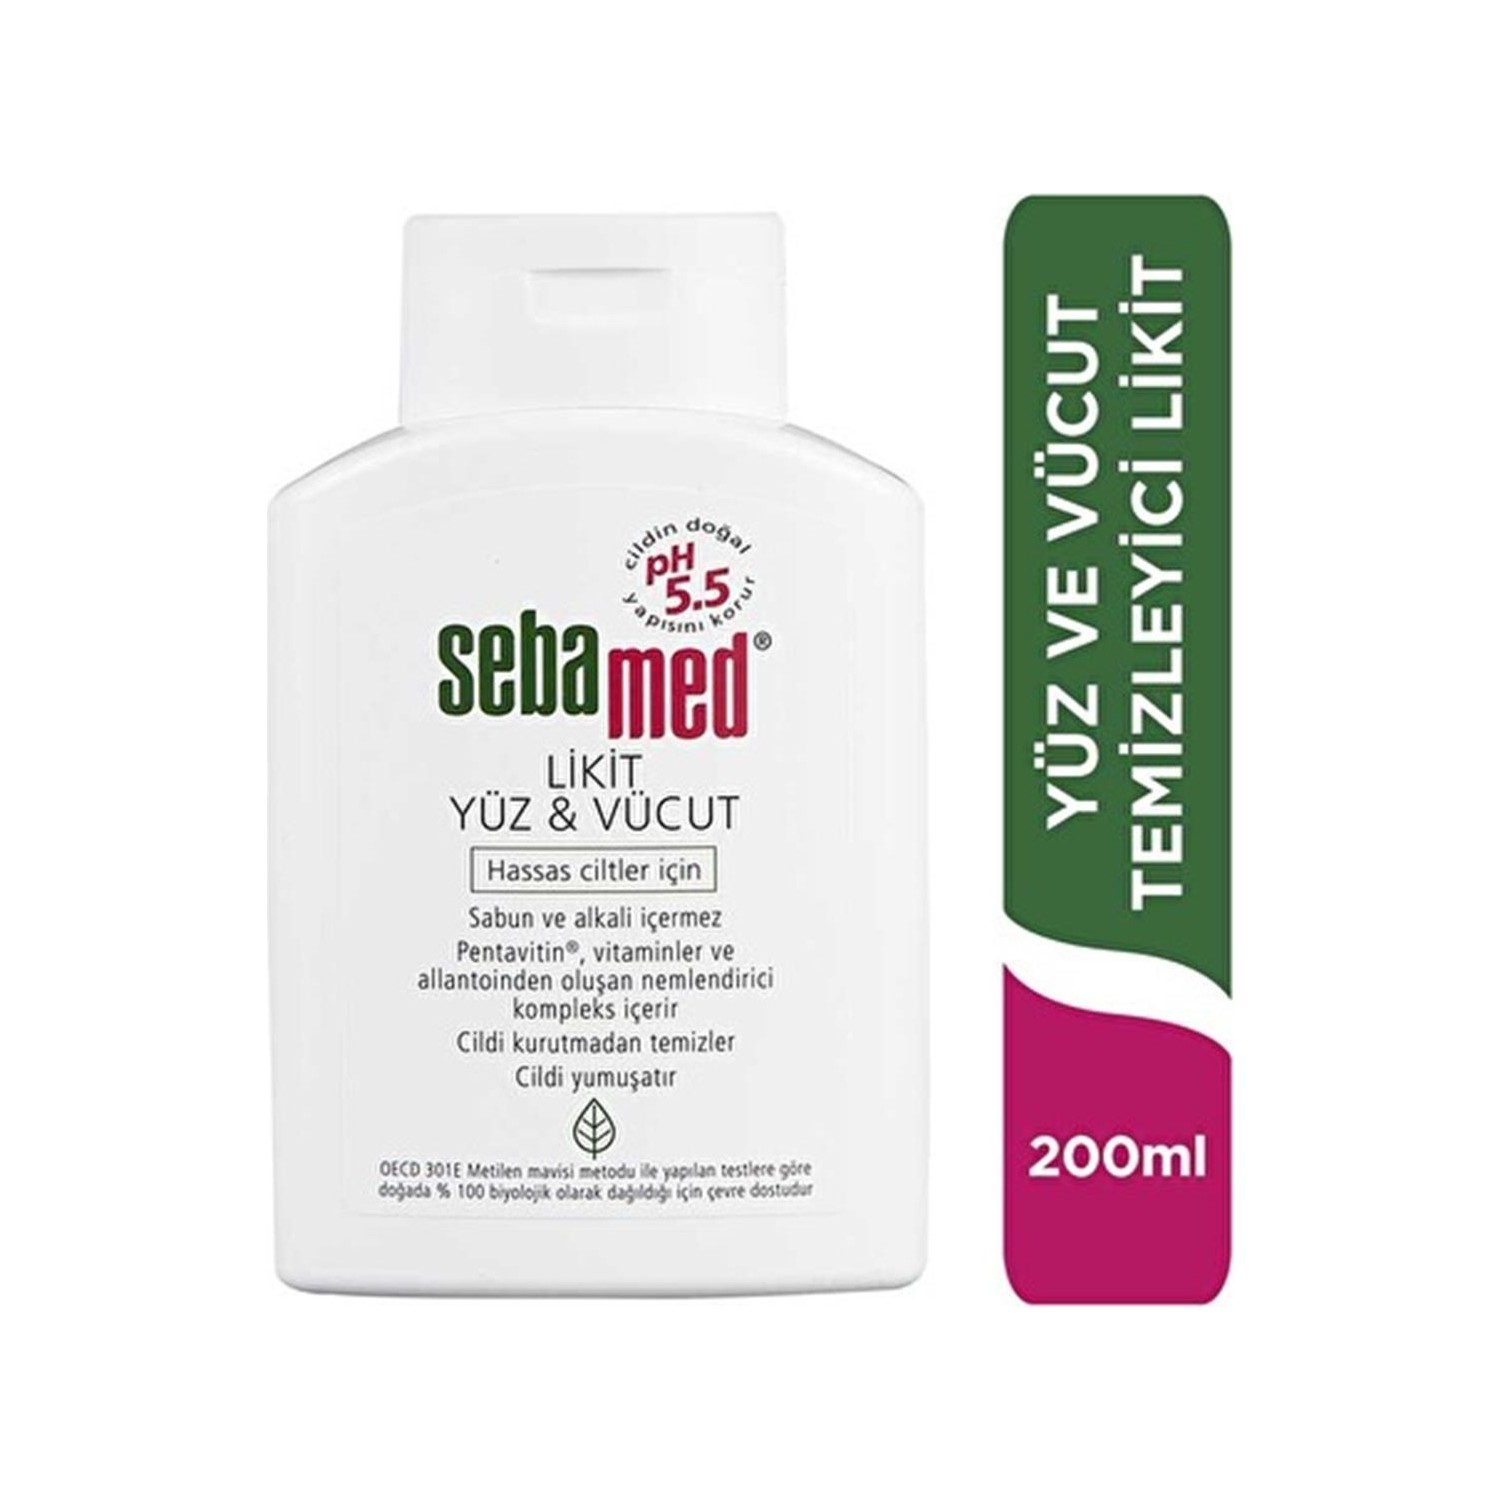 цена Очищающее средство Sebamed Liquid для лица и тела, 200 мл